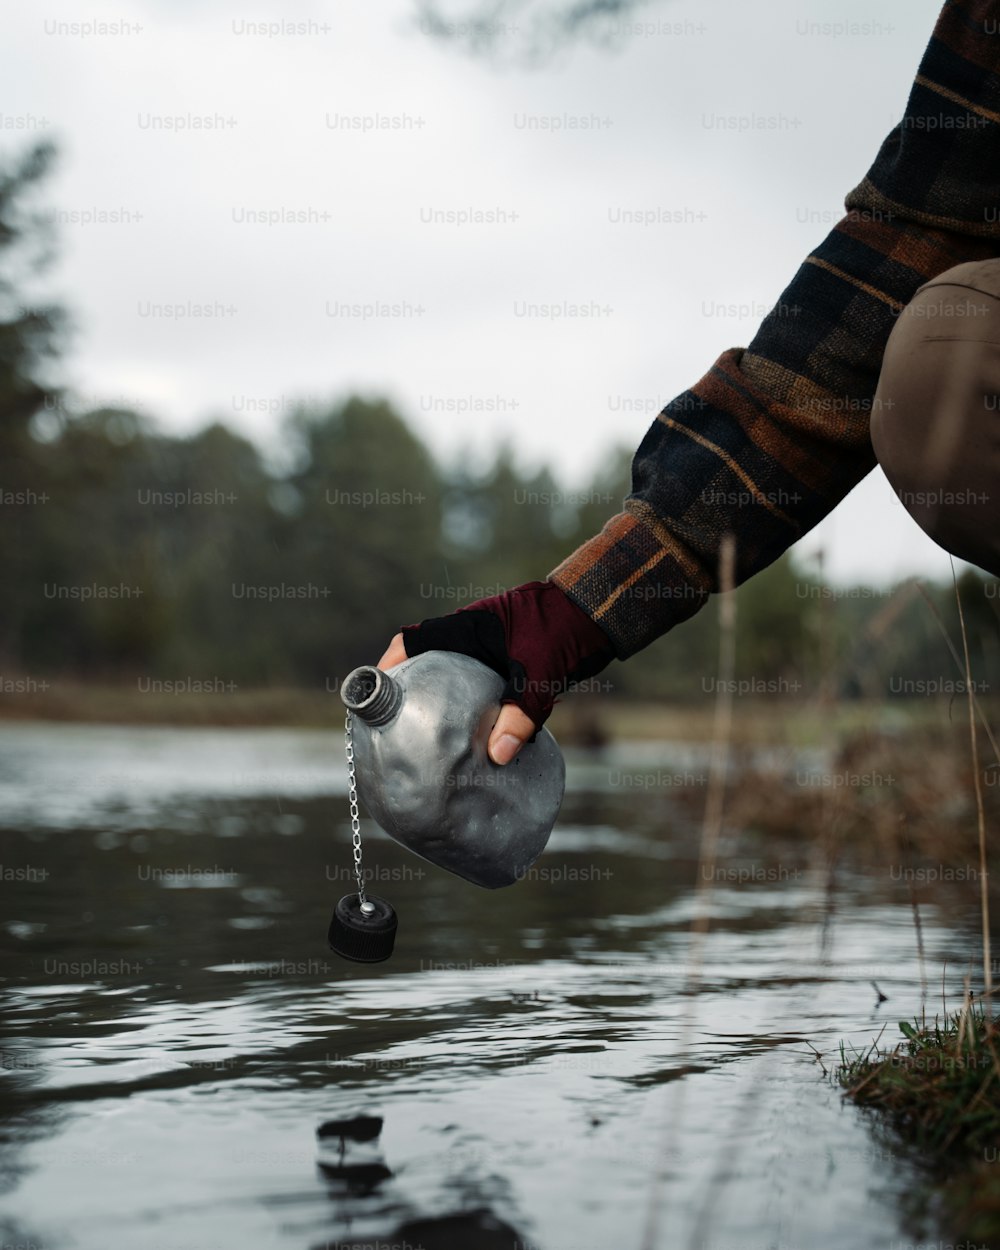 Eine Person hält einen Wasserkrug im Wasser